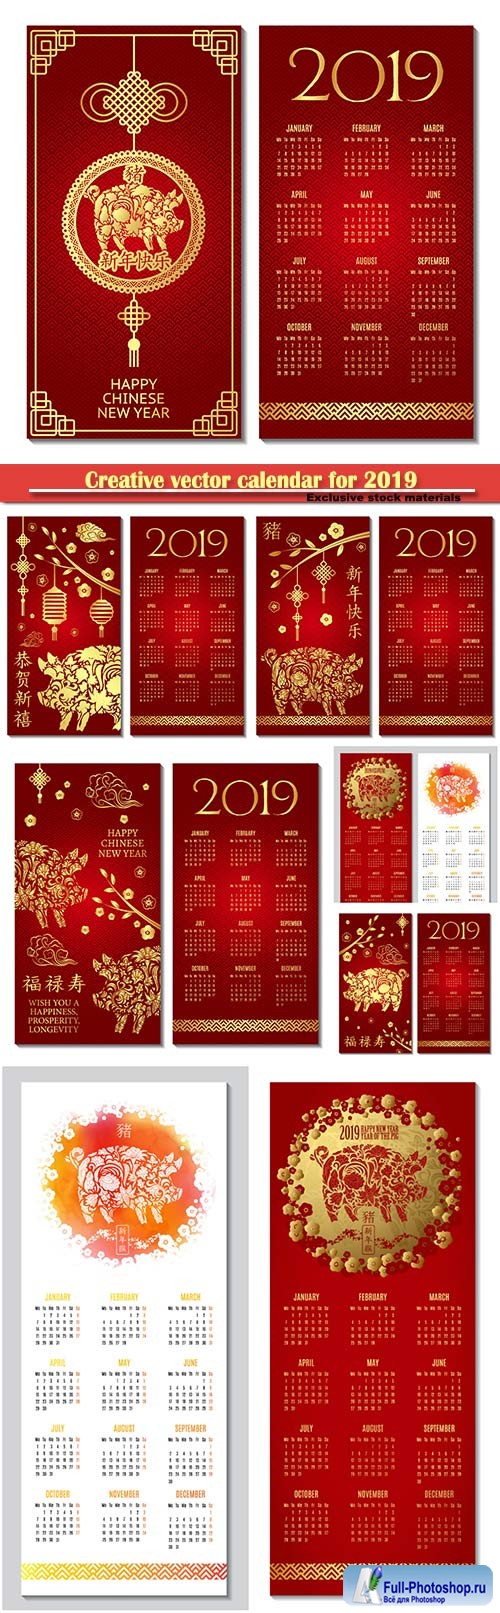 Creative vector calendar for 2019